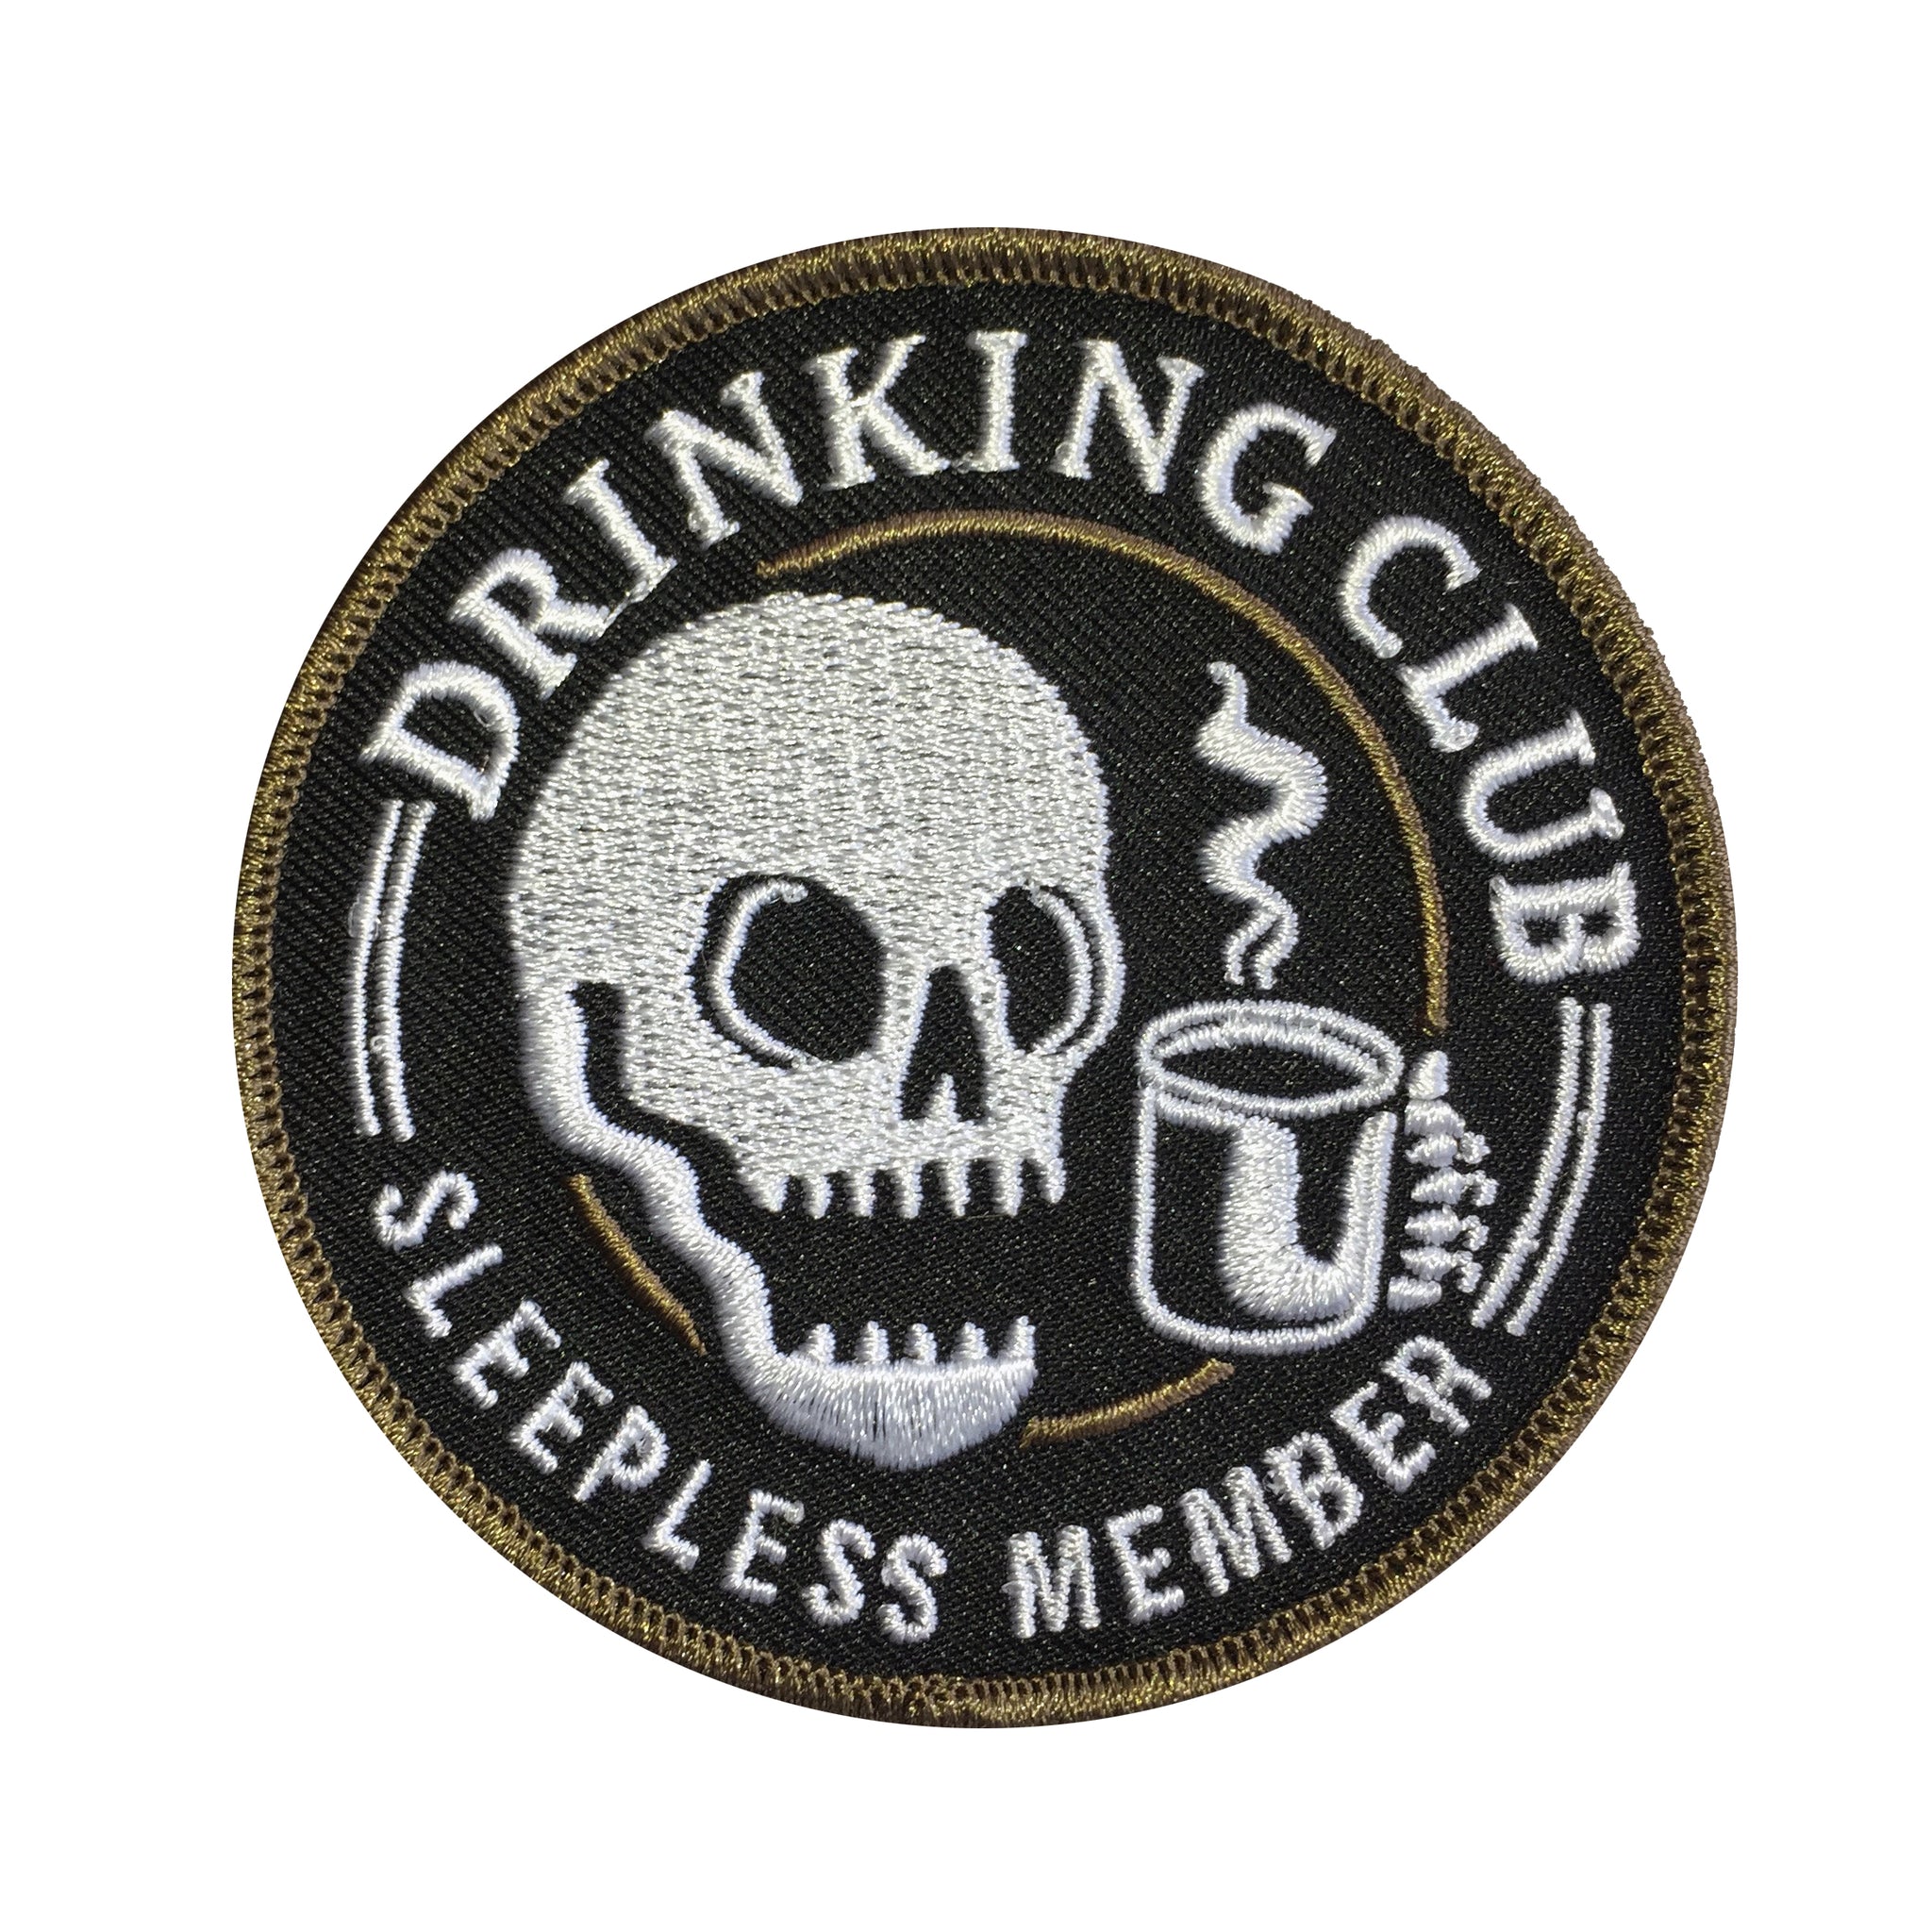 Drinking Club / Sleepless Member